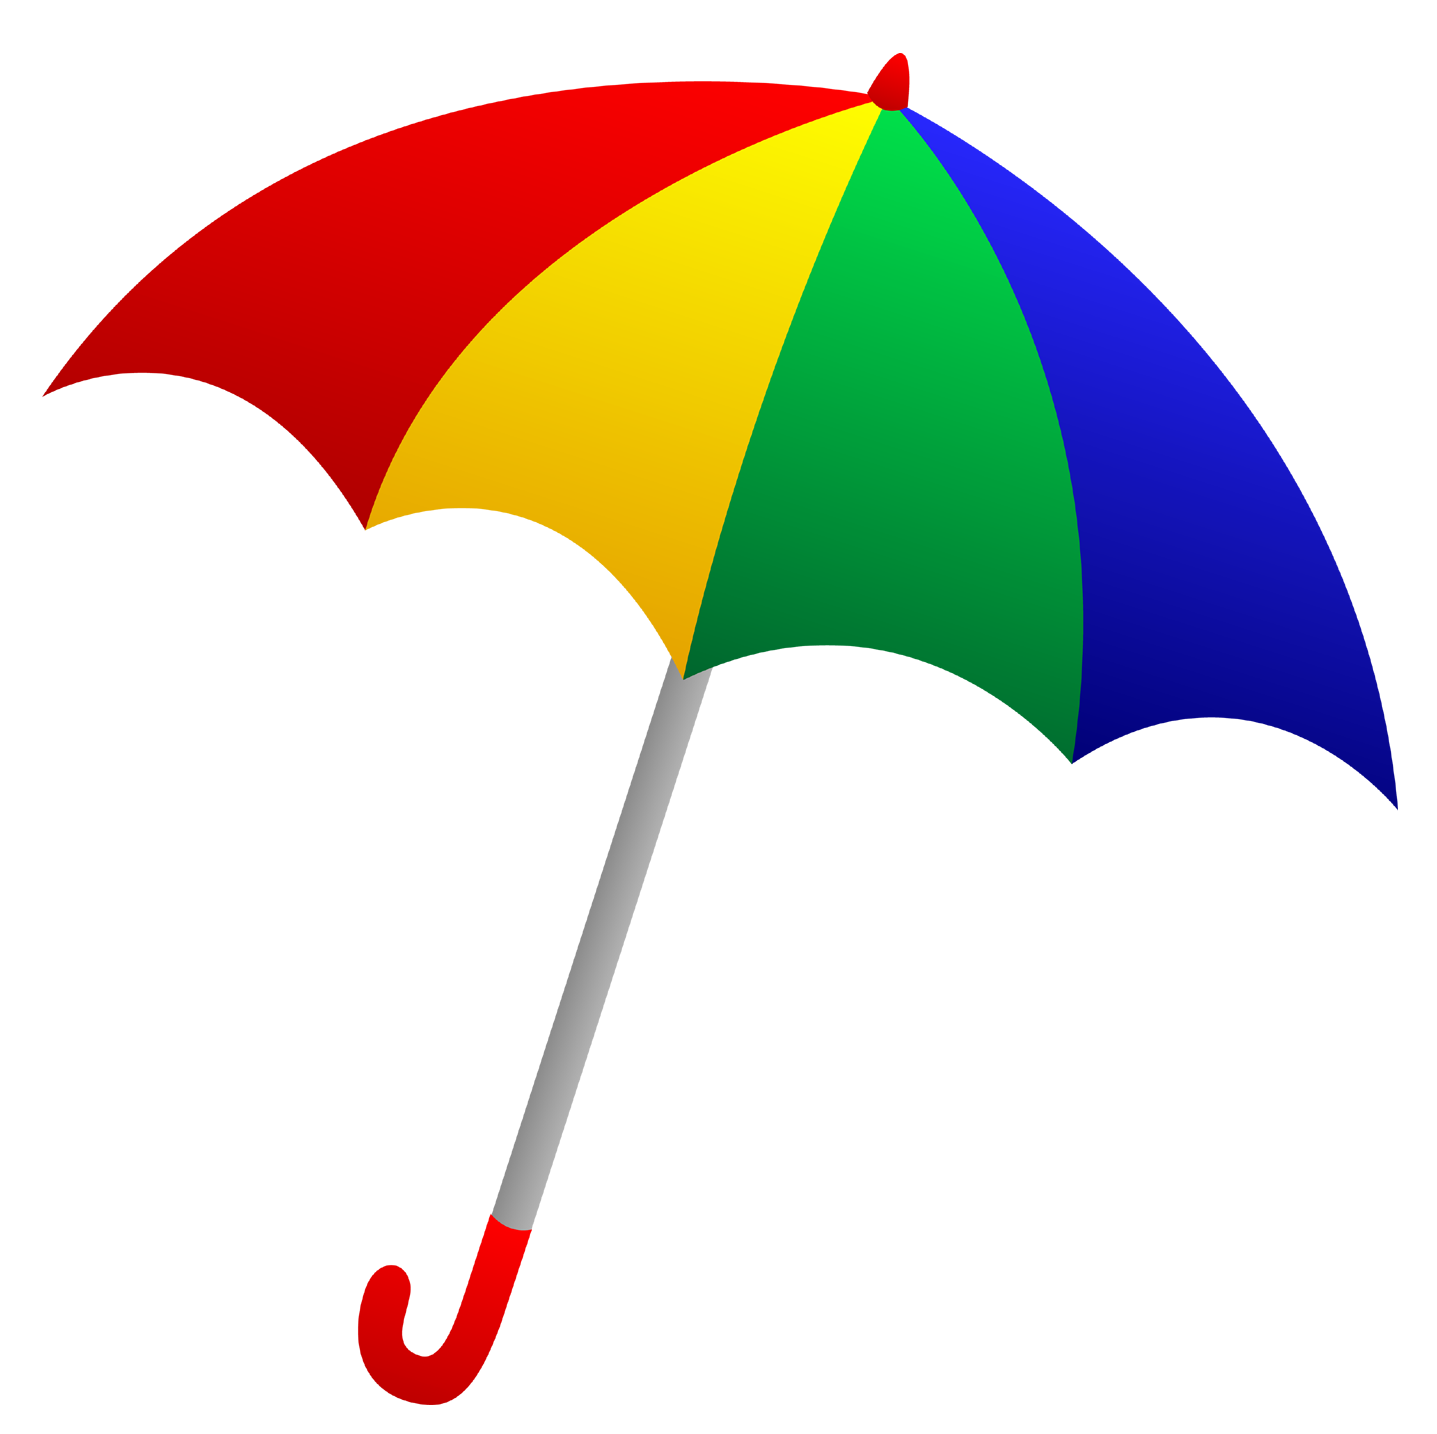 umbrella png Clipart image .